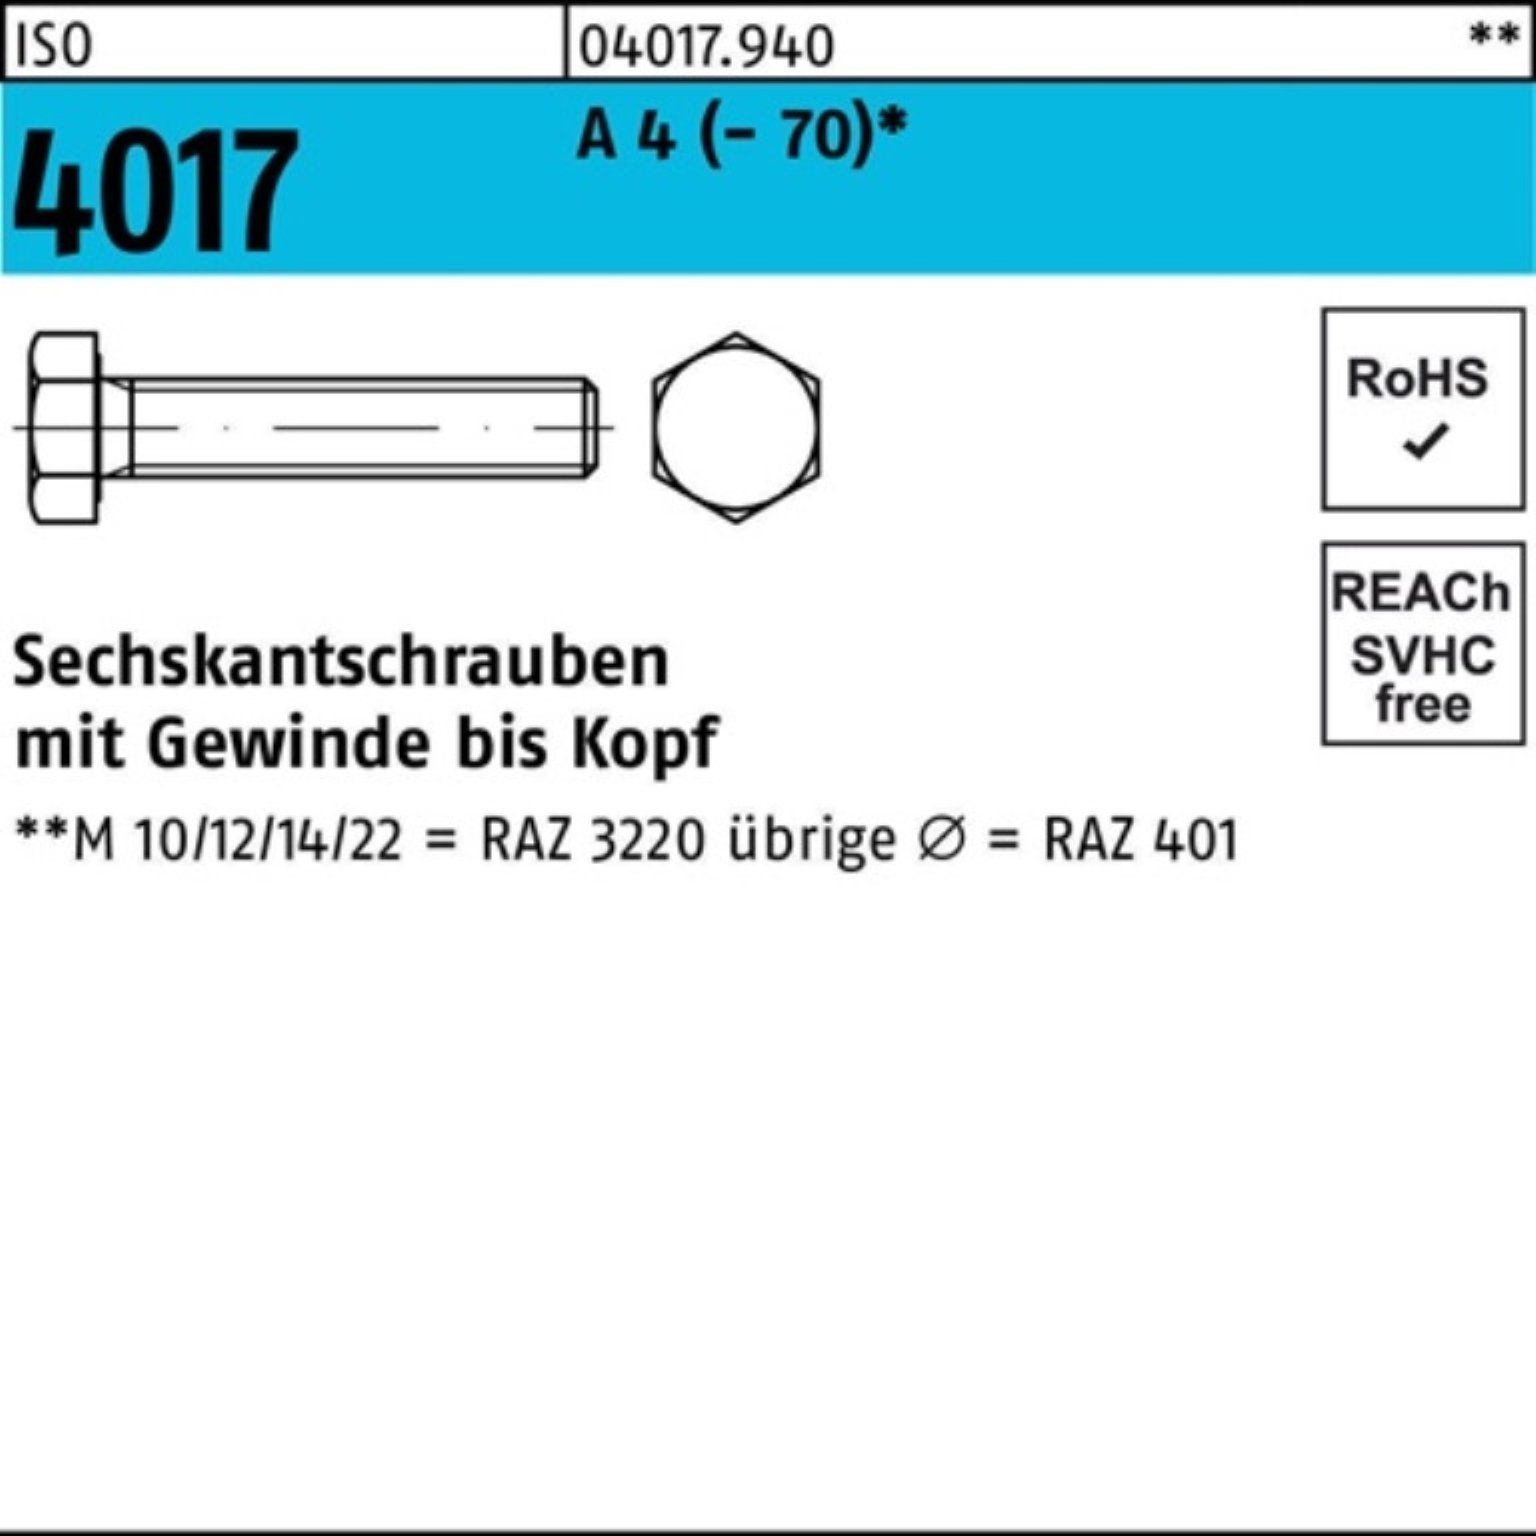 Bufab Sechskantschraube 100er Pack Sechskantschraube ISO 4017 VG M10x 12 A 4 (70) 100 Stück